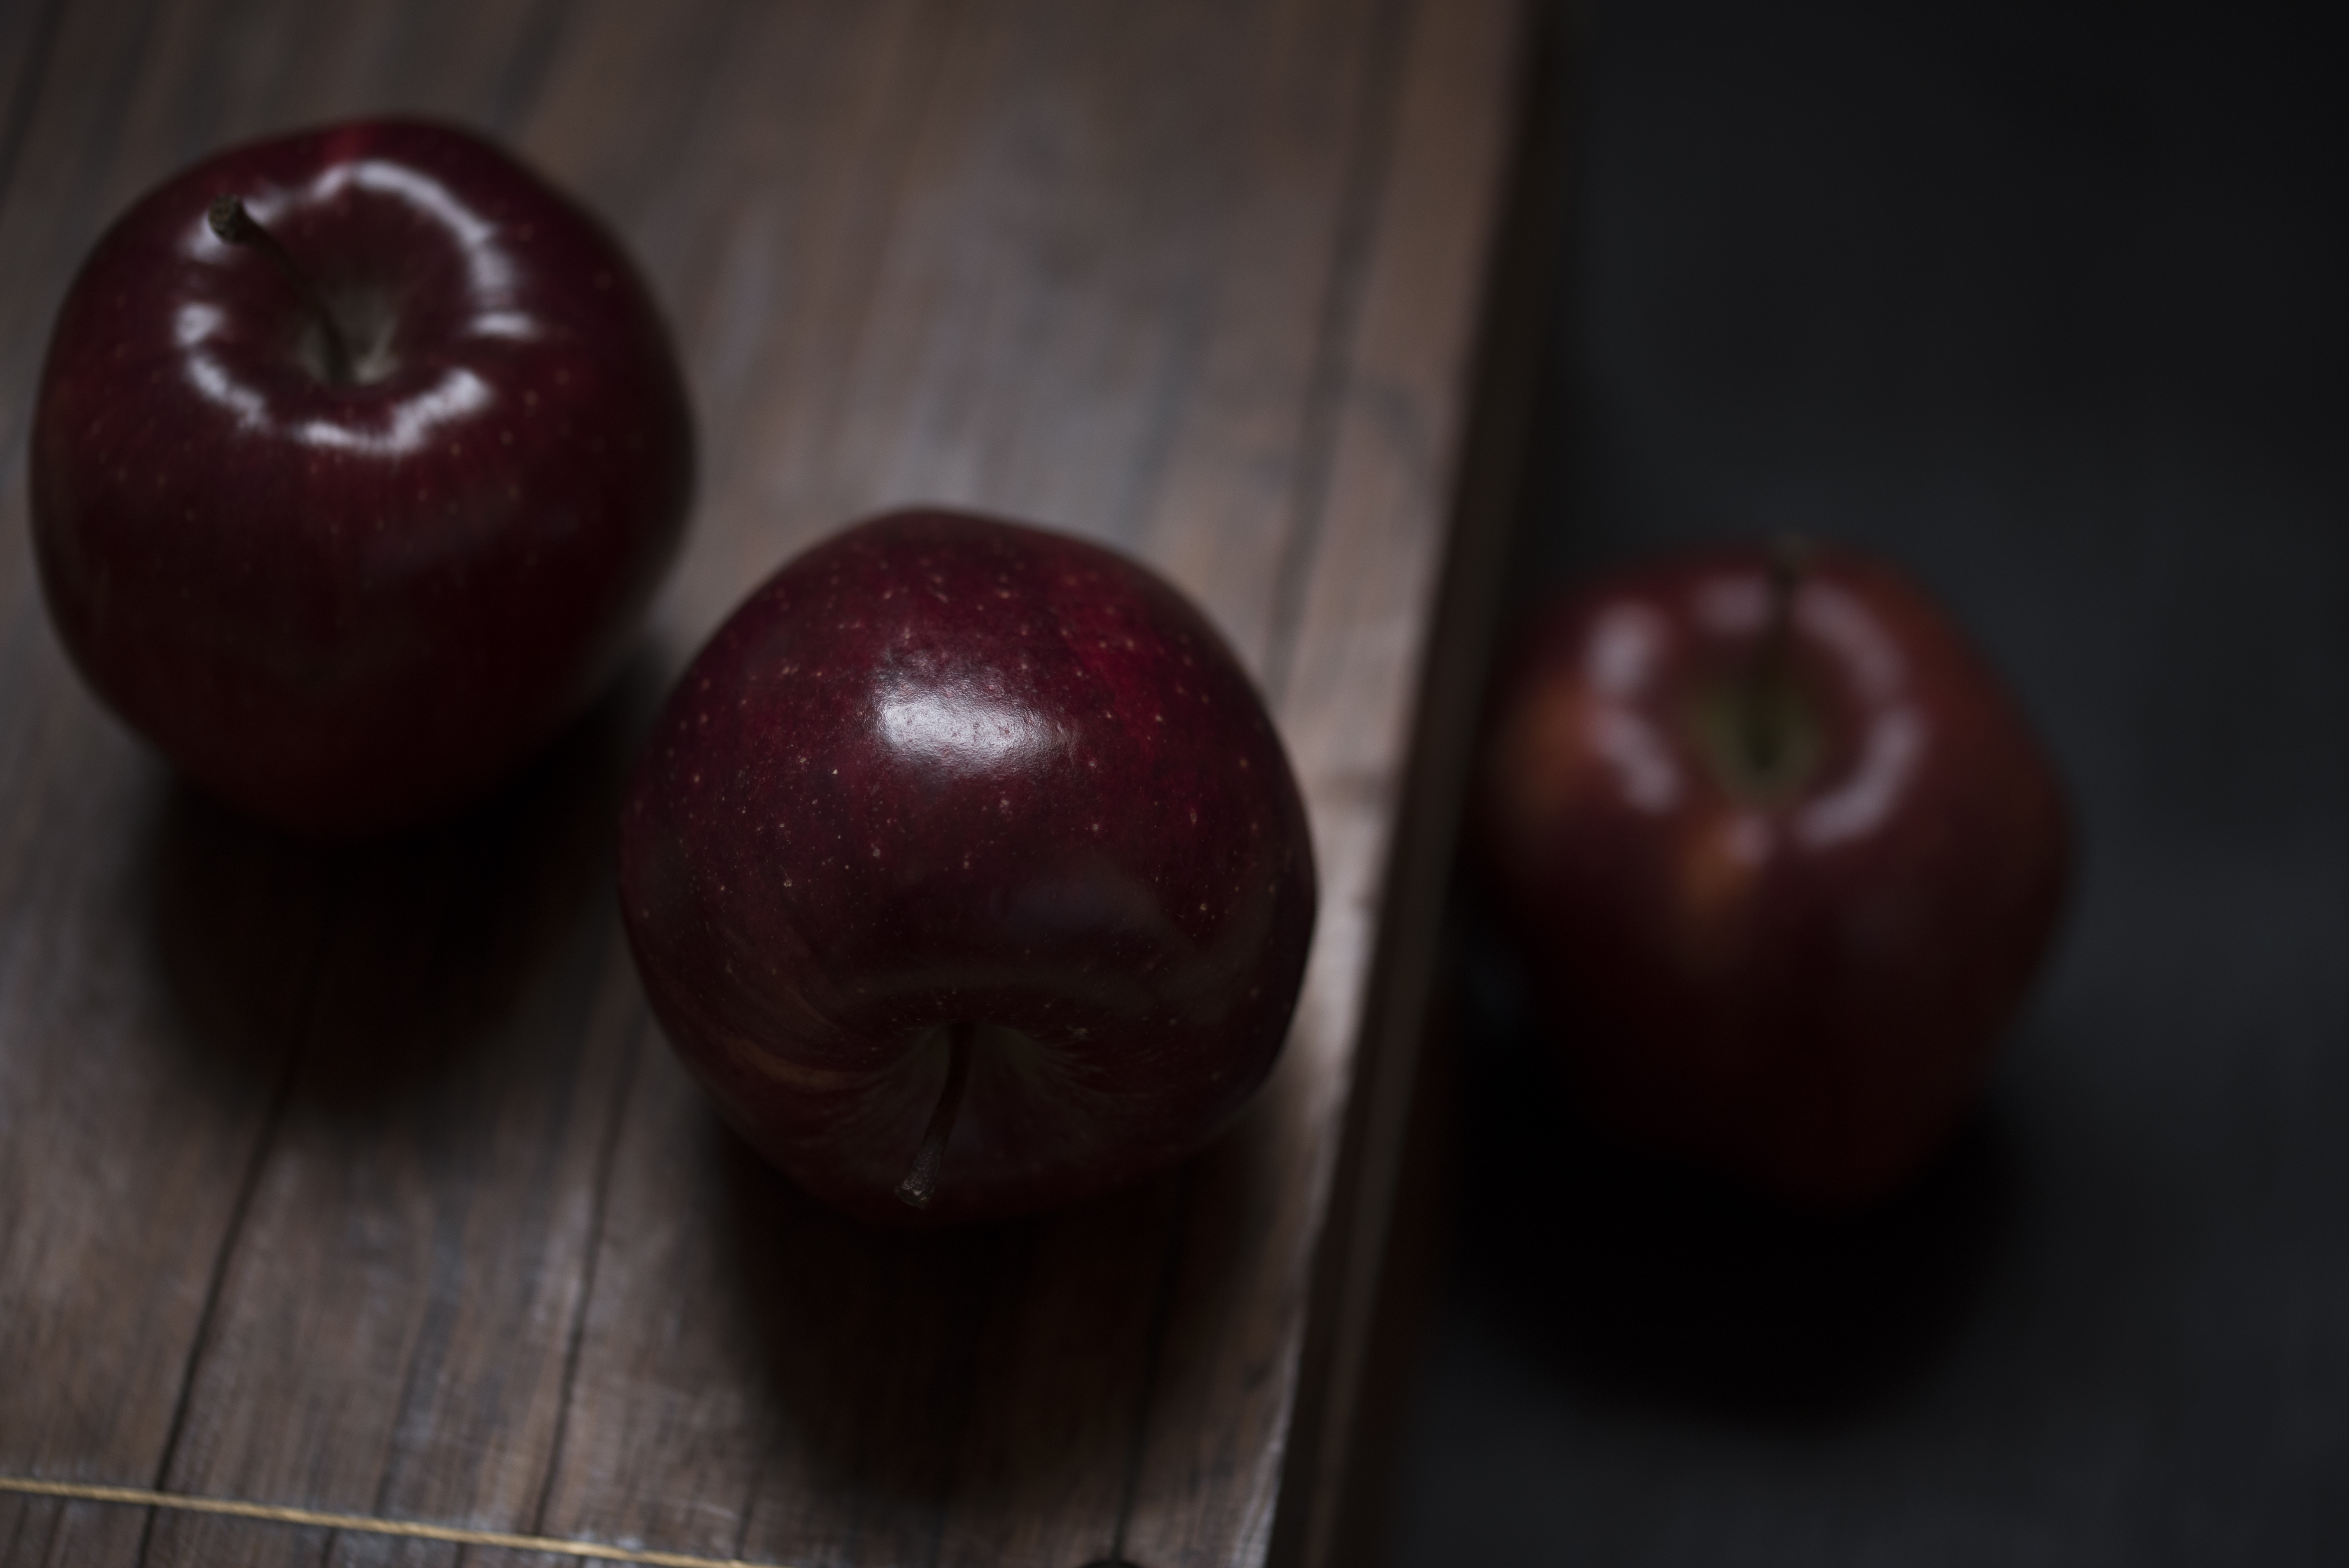 Three Apples, Apple, Food, Fruit, Health, HQ Photo